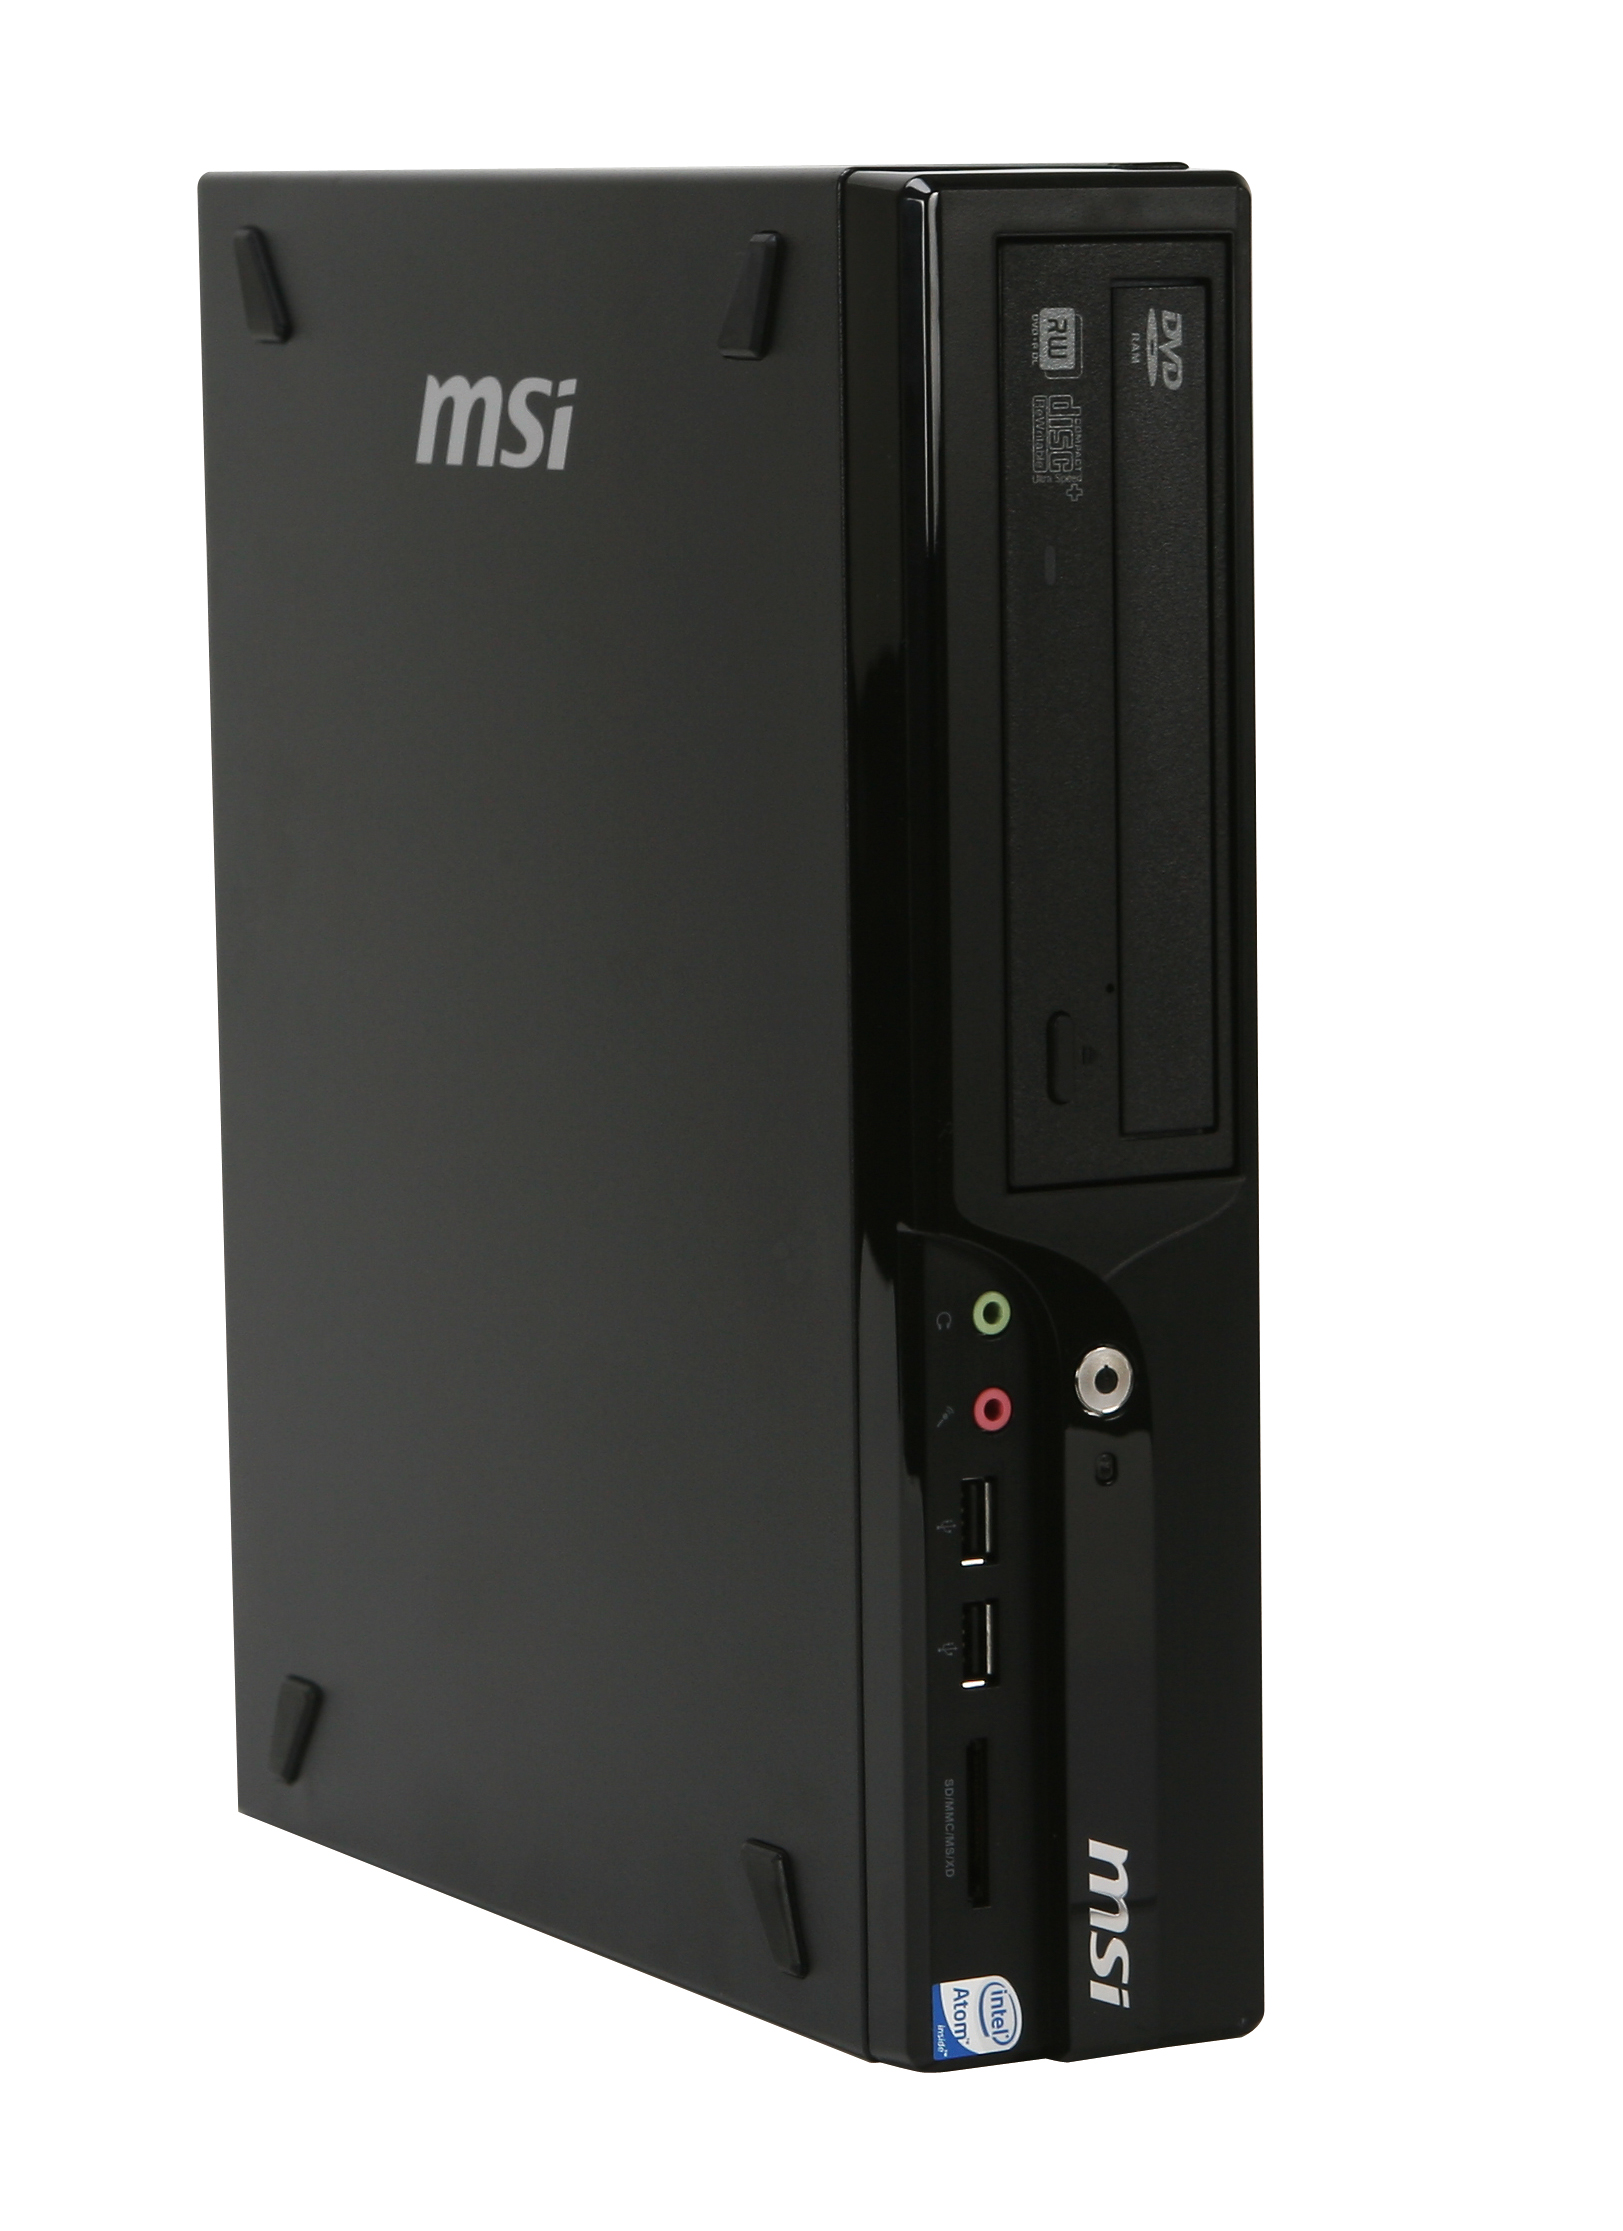 Immagine pubblicata in relazione al seguente contenuto: Wind Nettop D130, il primo nettop con Atom dual-core di MSI | Nome immagine: news9394_2.jpg